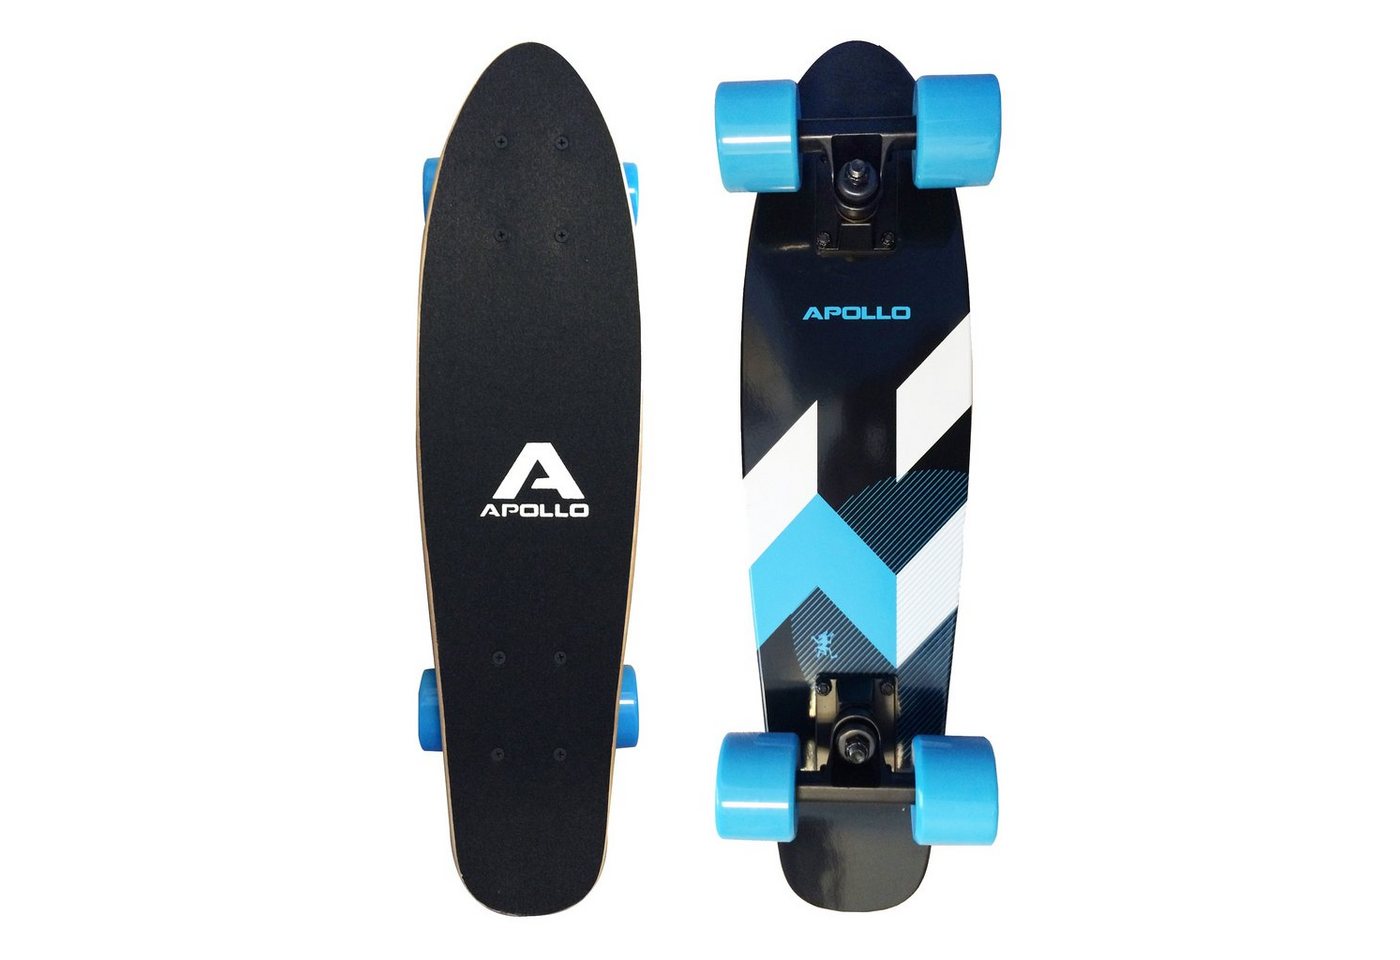 Apollo Miniskateboard Fancyboard Classic Blue 22", kompakt mit hochwertiger Verarbeitung von Apollo